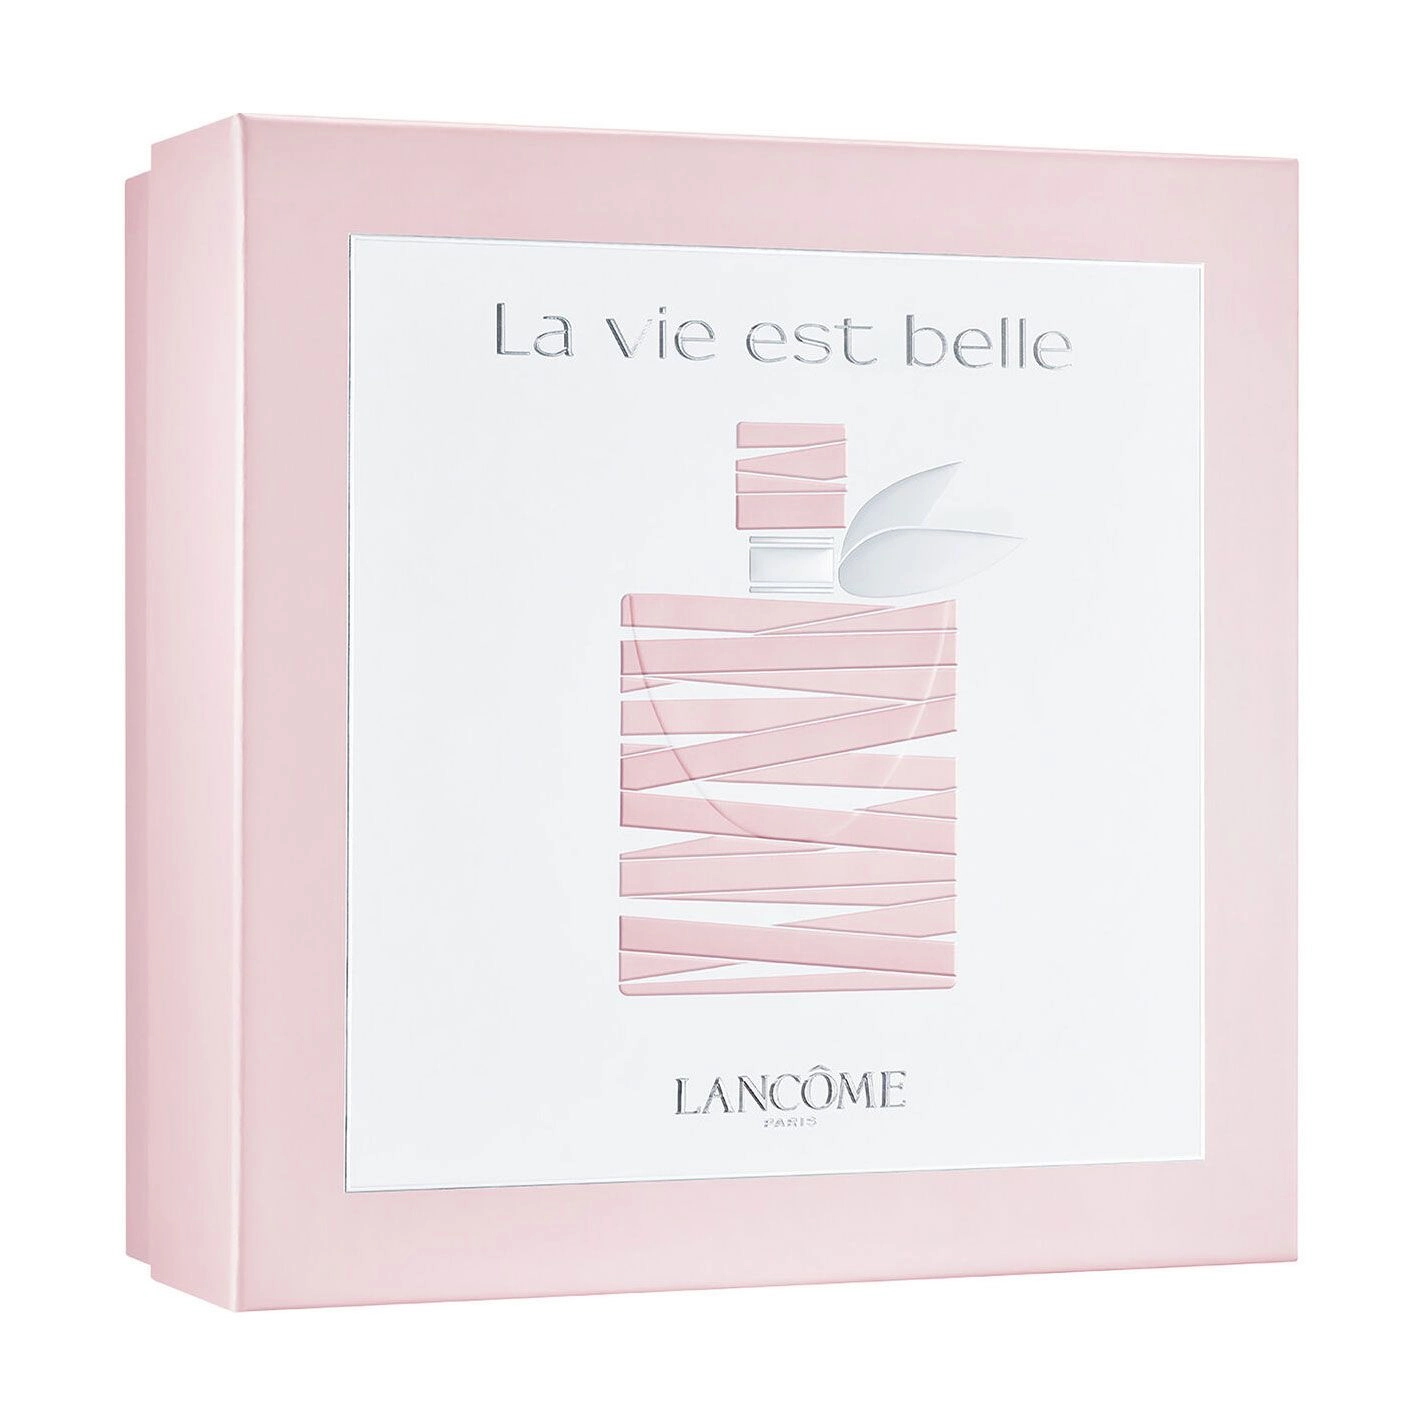 Lancome Парфюмированный набор женский La Vie Est Belle (парфюмированная вода, 30 мл + лосьон для тела, 50 мл) - фото N3